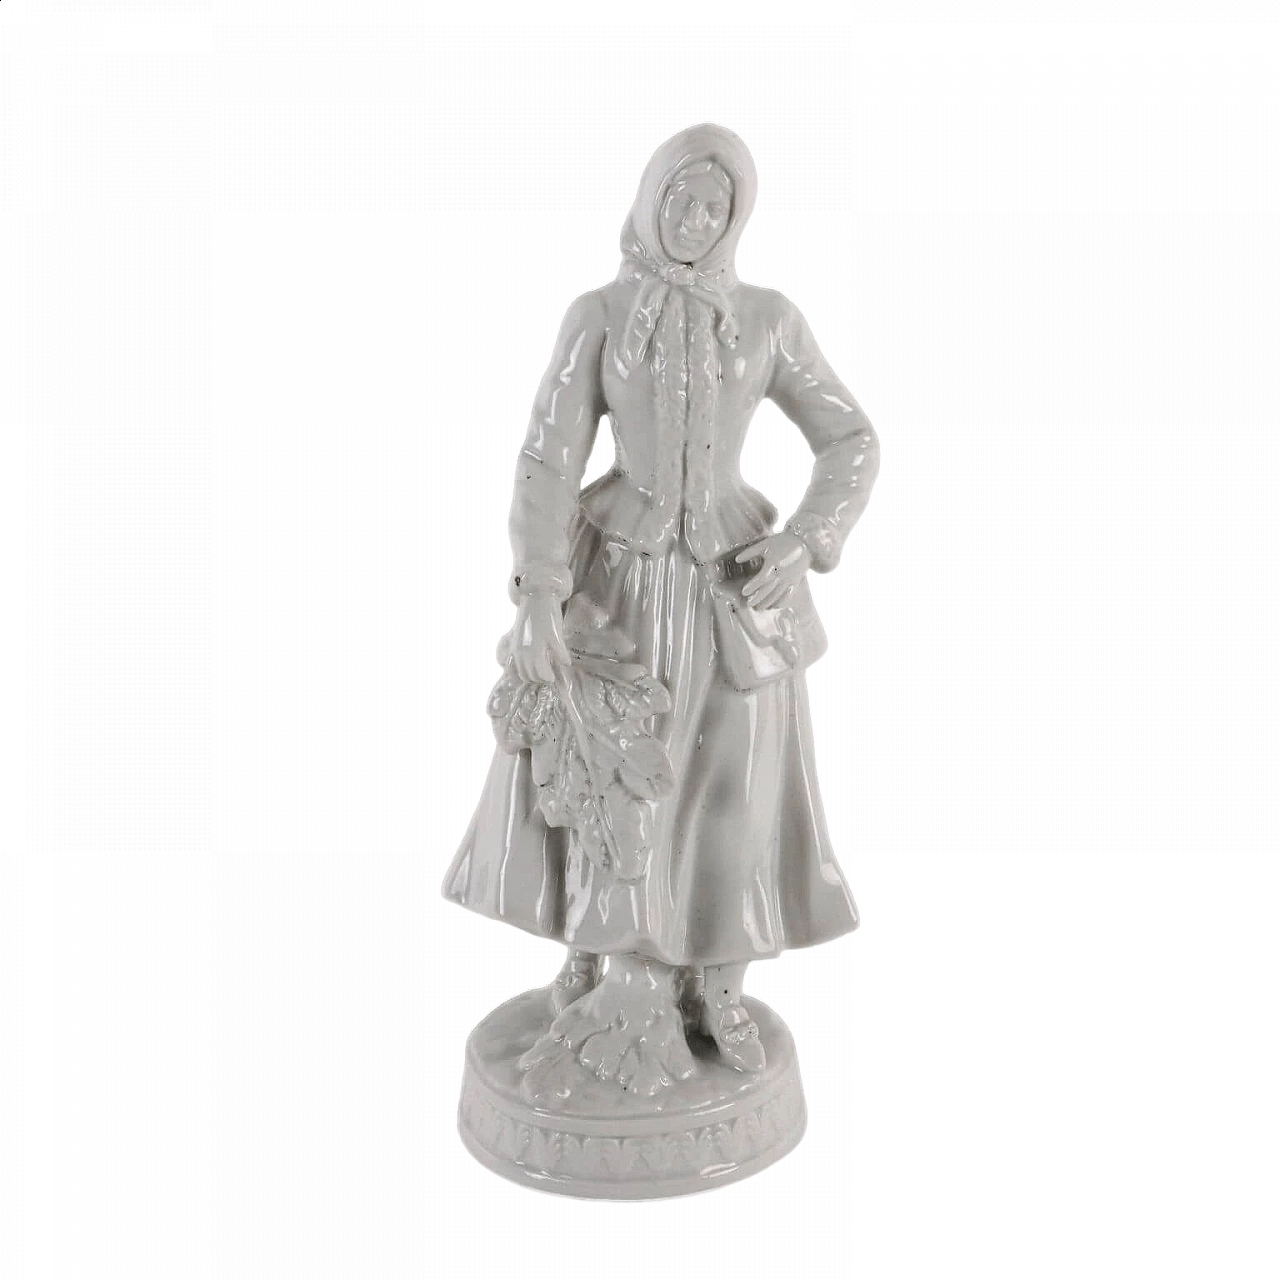 Peasant woman, Rudolstadt porcelain sculpture, late 19th century 20